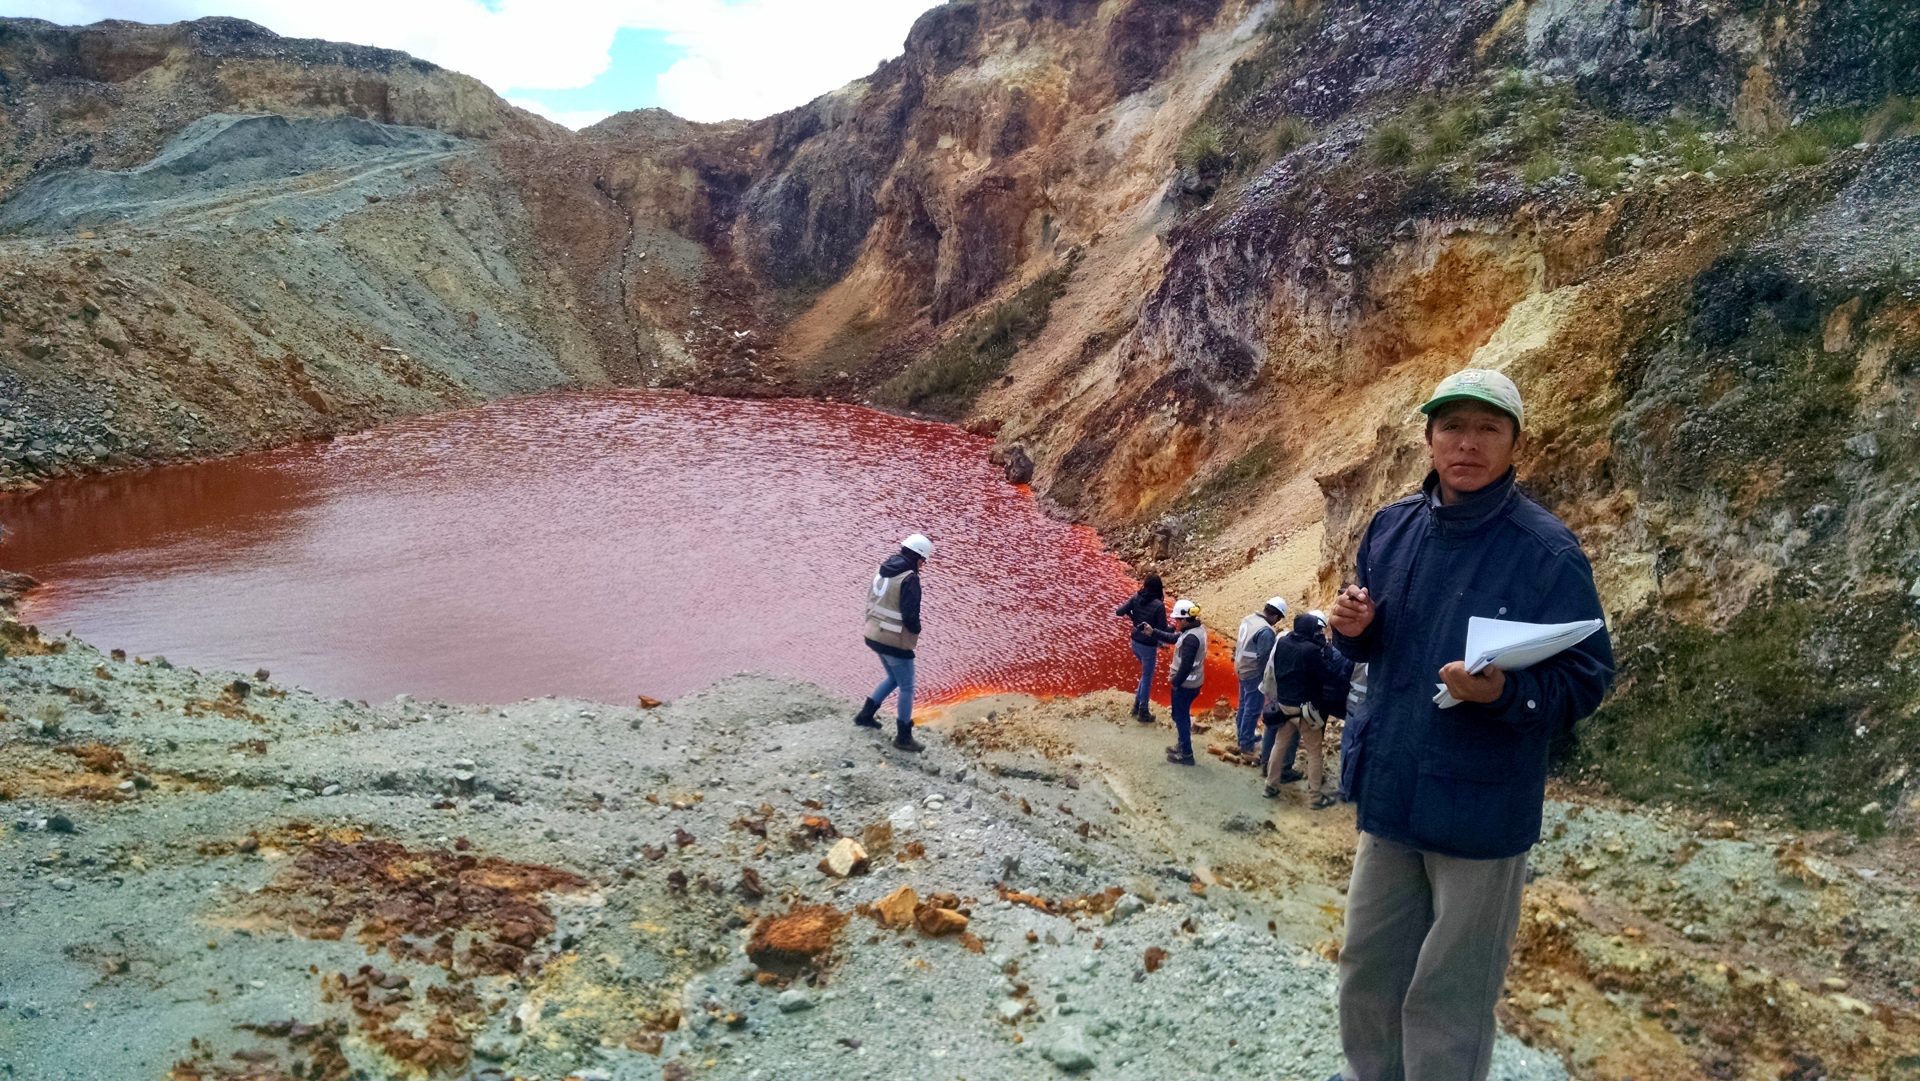 Grüne Technologien hier? Zerstörung und Armut dort. Umwelt- und soziale Folgen des Kupferabbaus in Peru